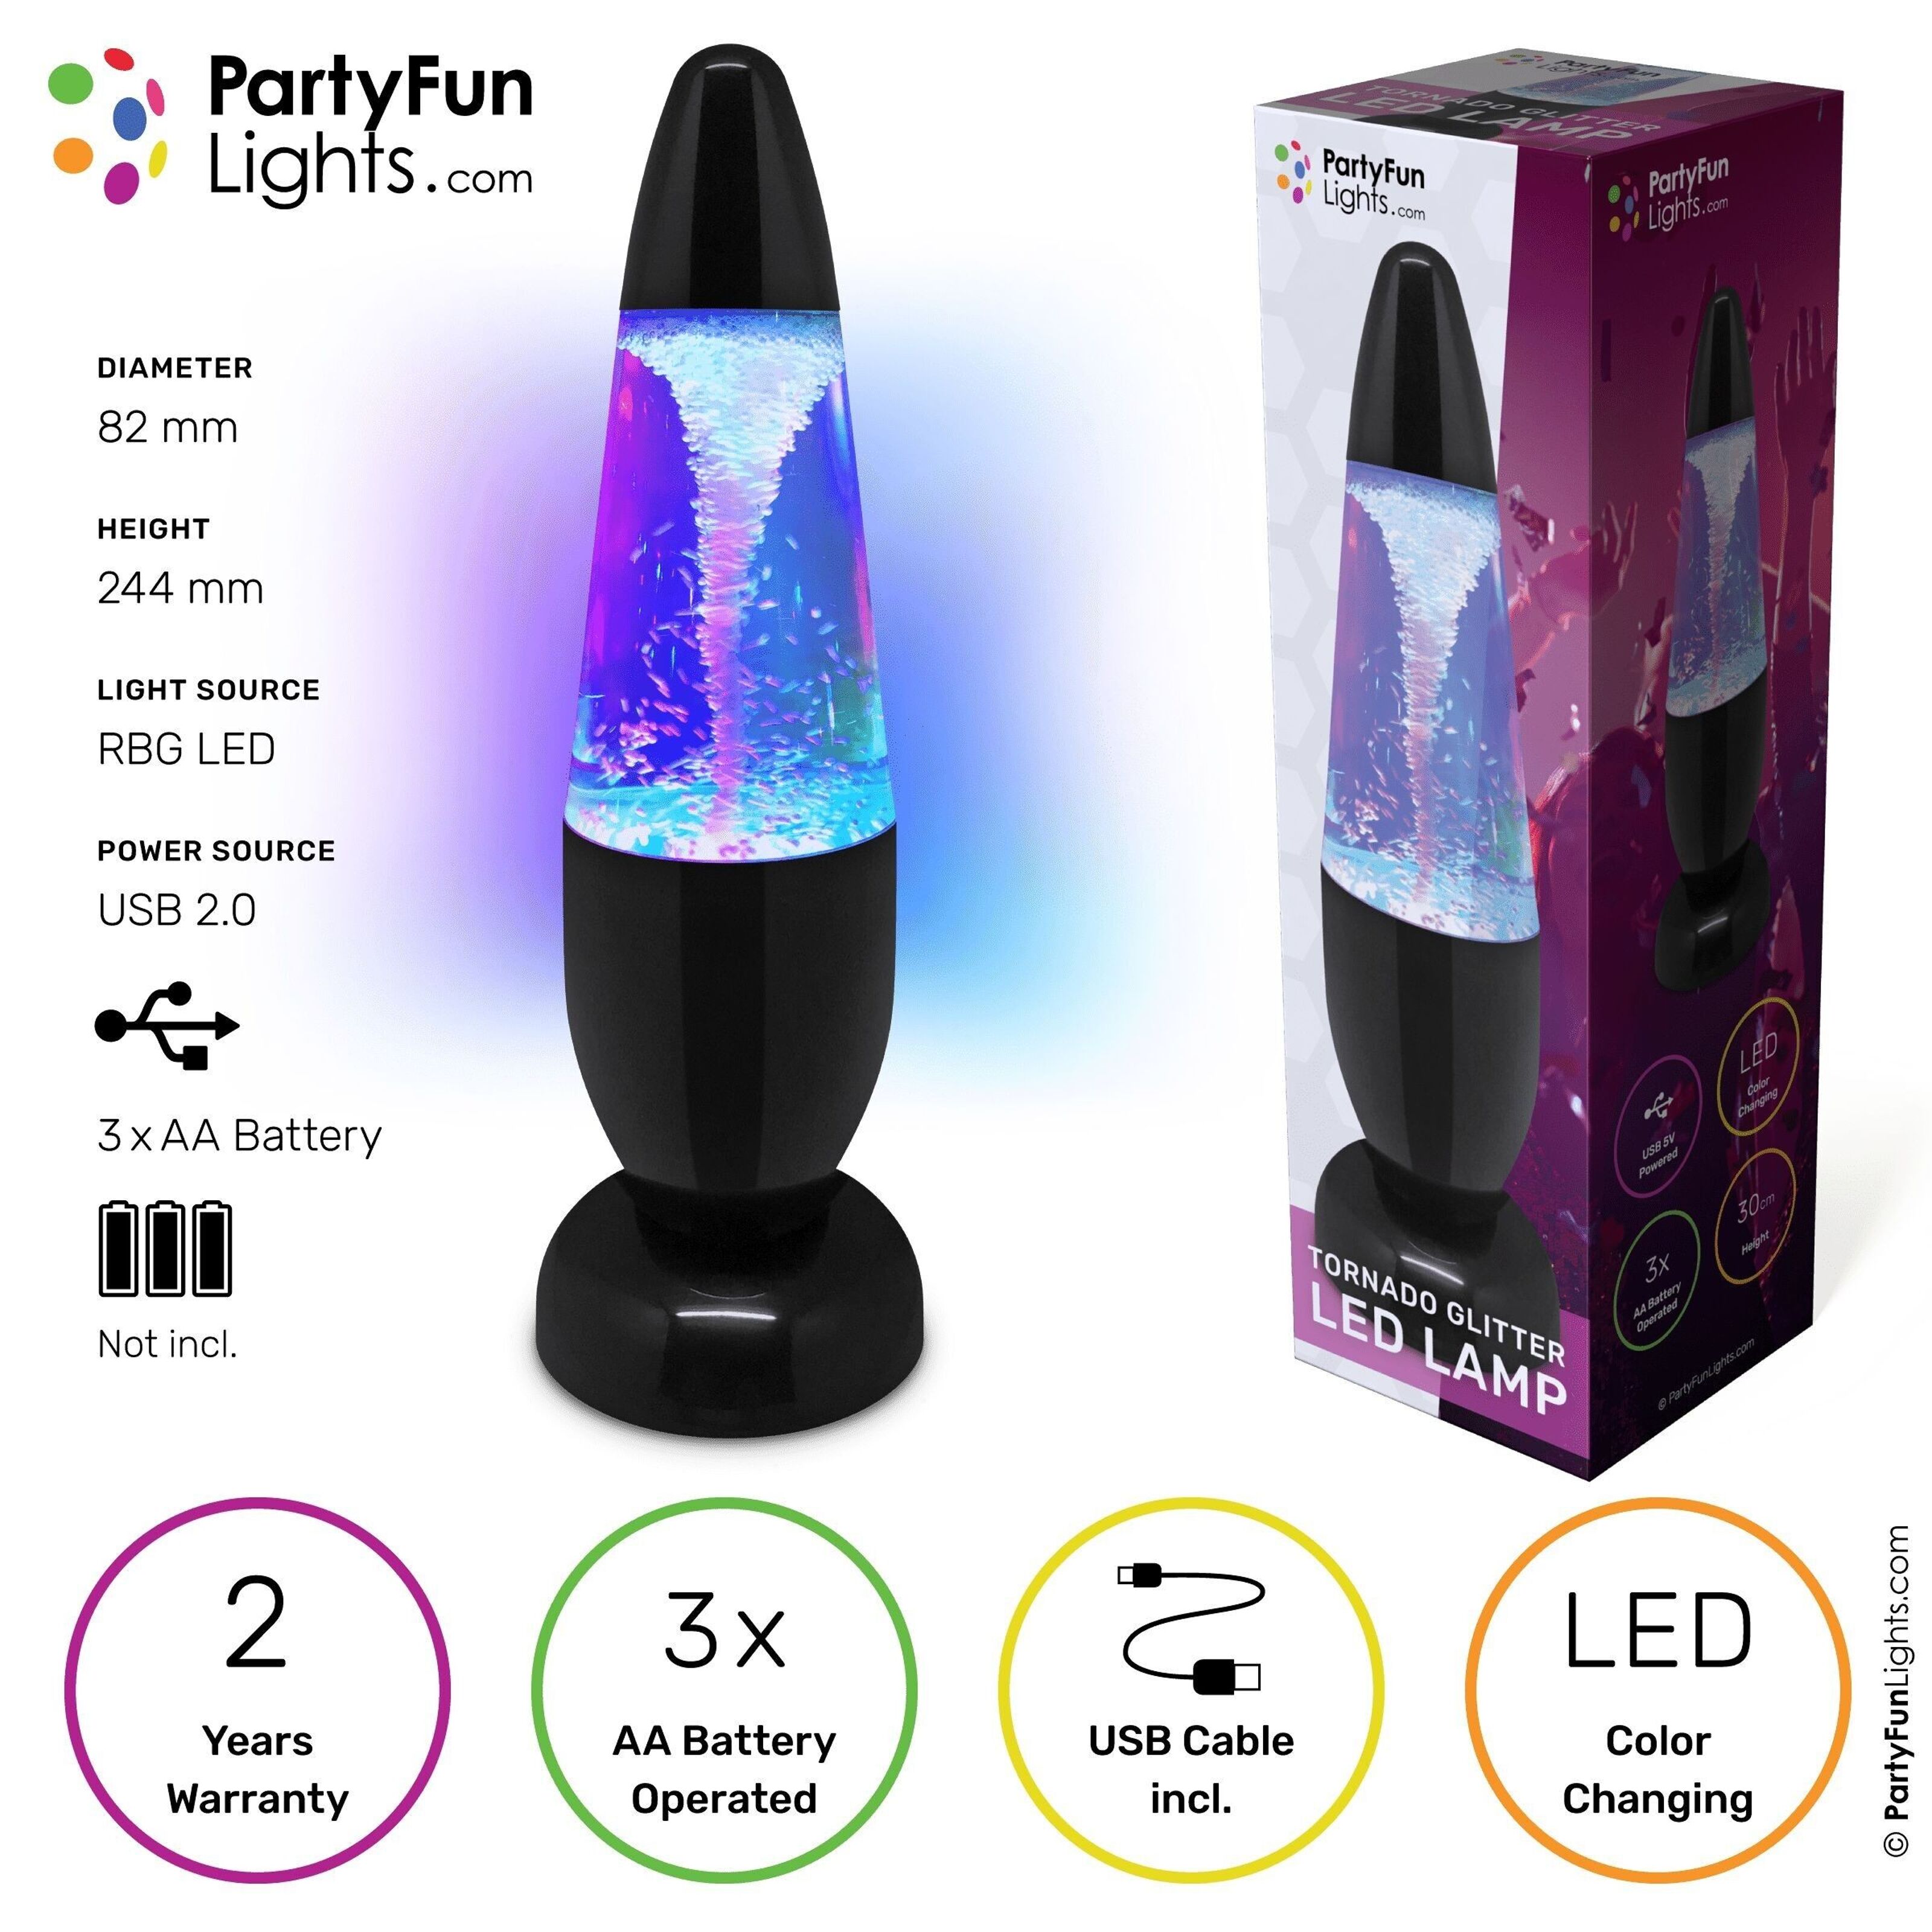 Kaufen Sie PartyFunLights - Tornado Glitzerlampe - Farbwechsel - LED - USB  und Batterien zu Großhandelspreisen